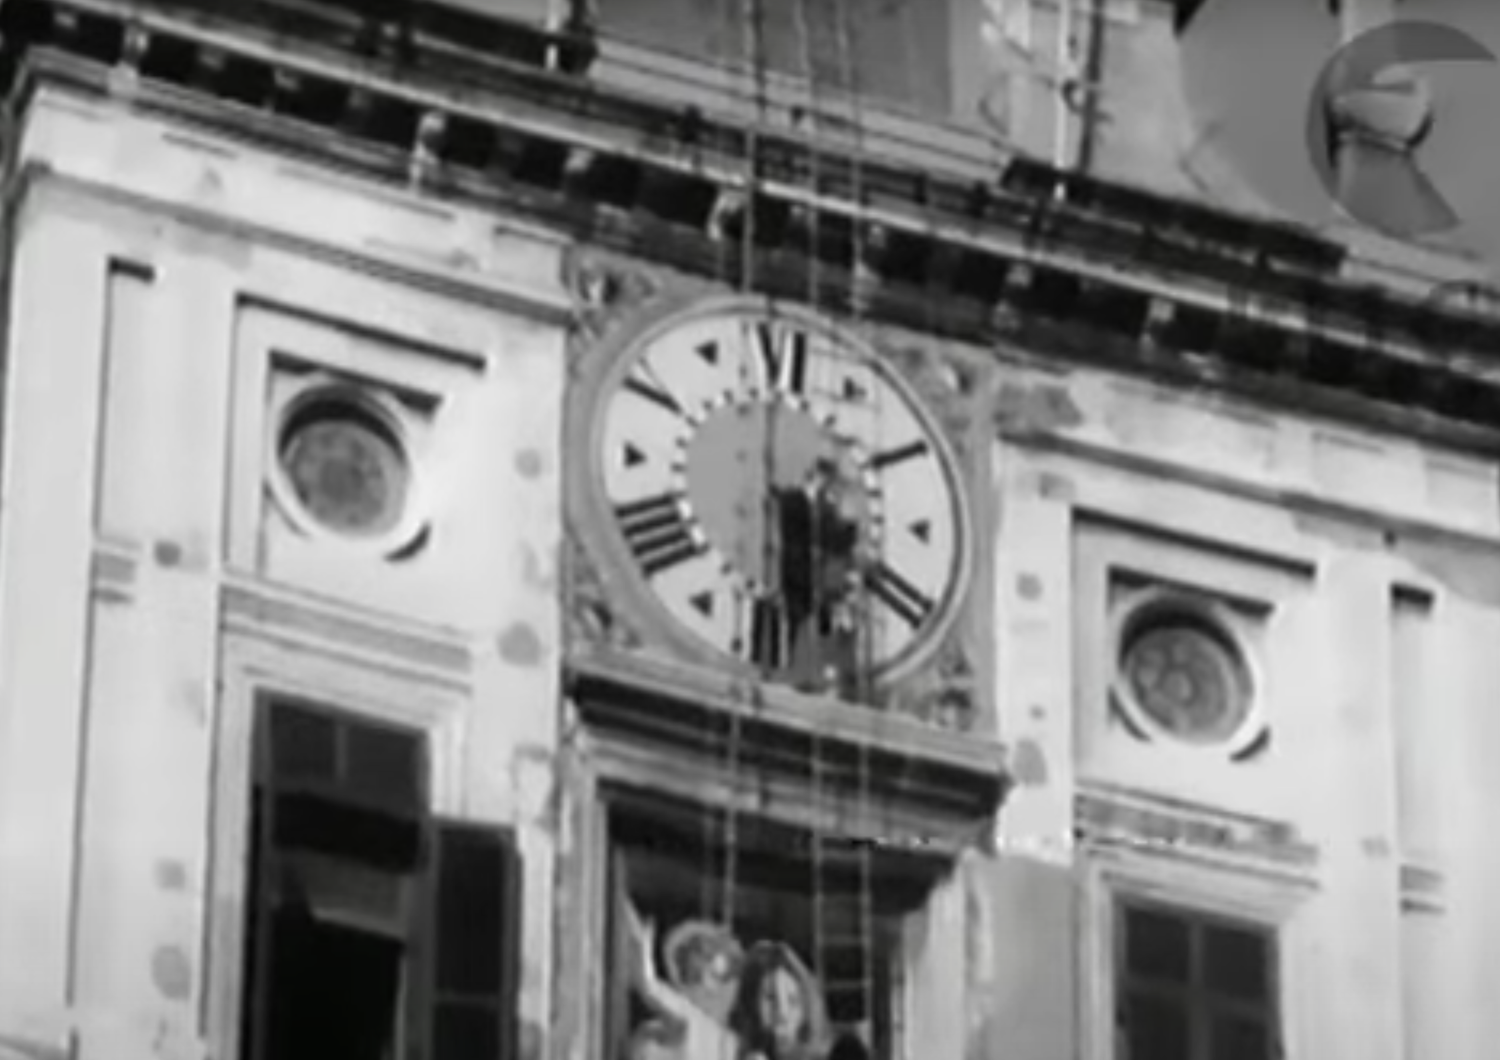 carabinieri recuperano orologio torre quirinale